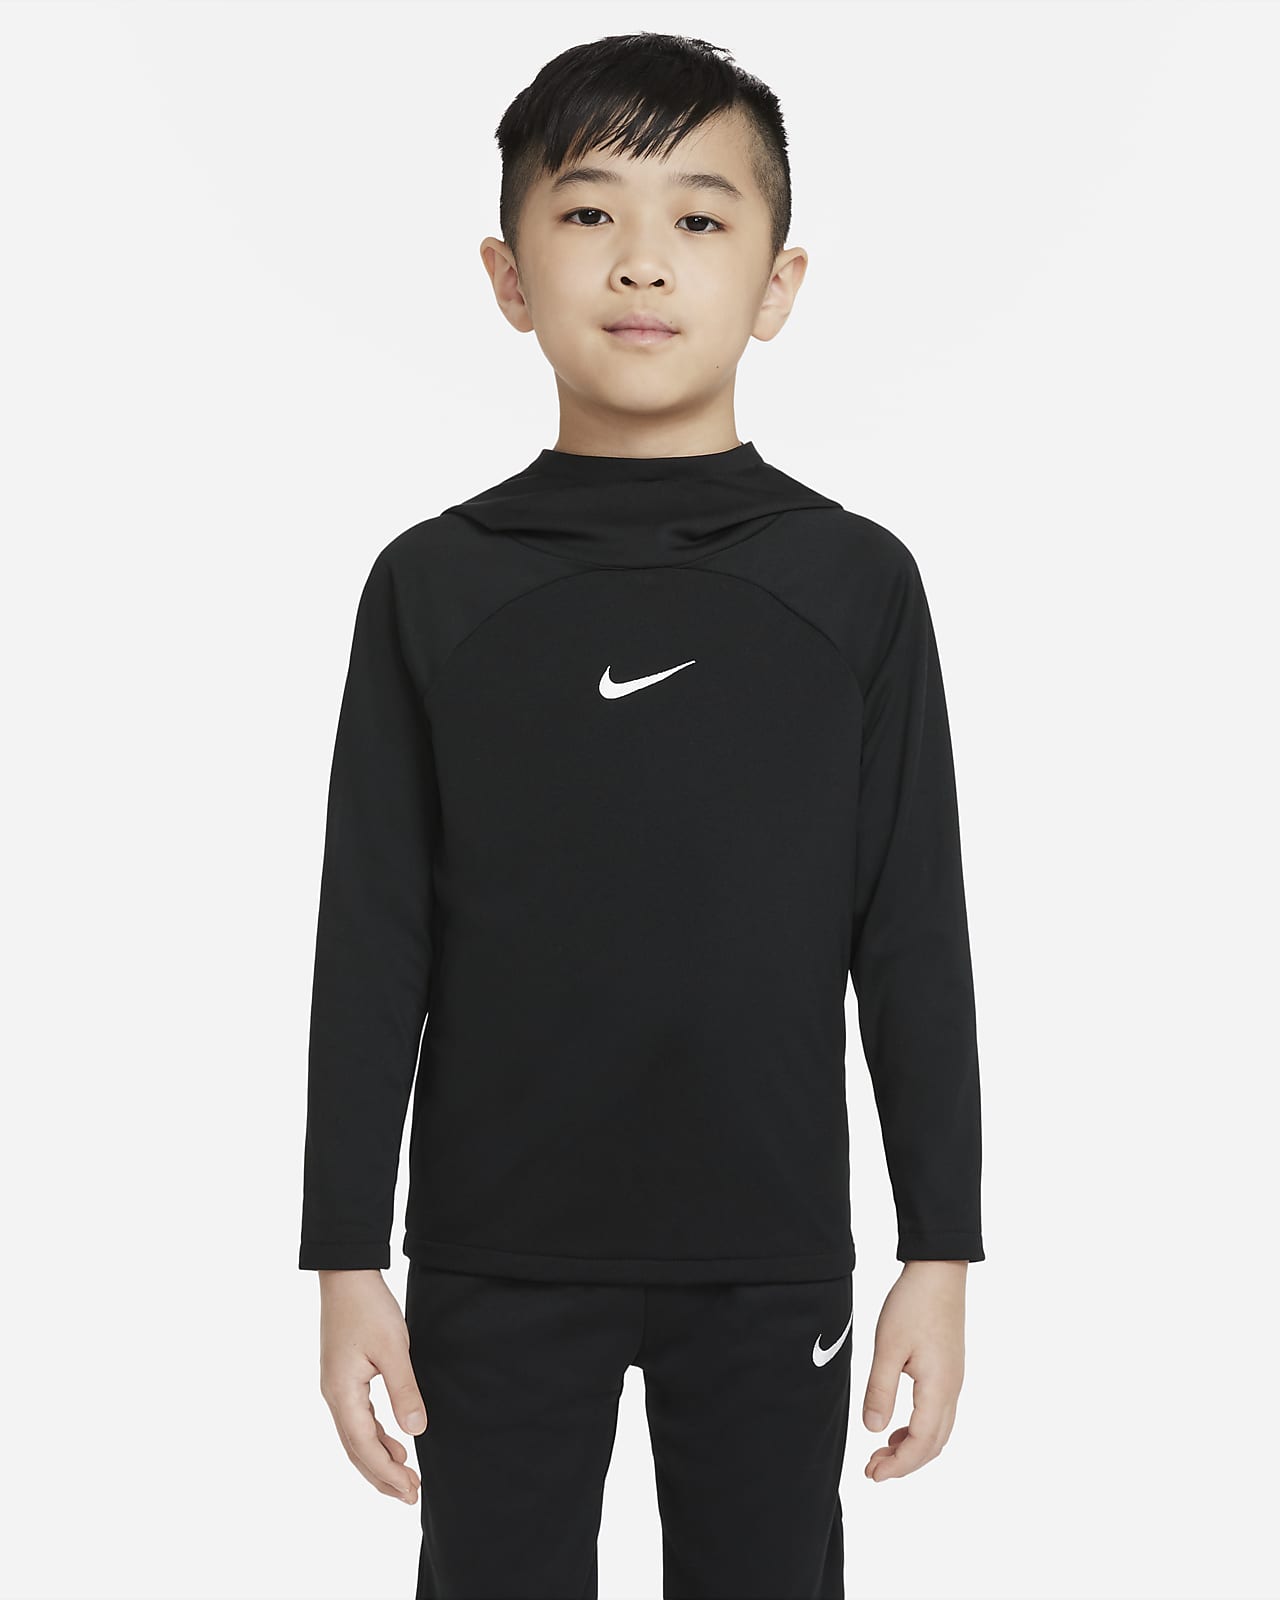 Nike Dri-FIT Academy Pro Dessuadora amb caputxa de futbol - Nen/a petit/a